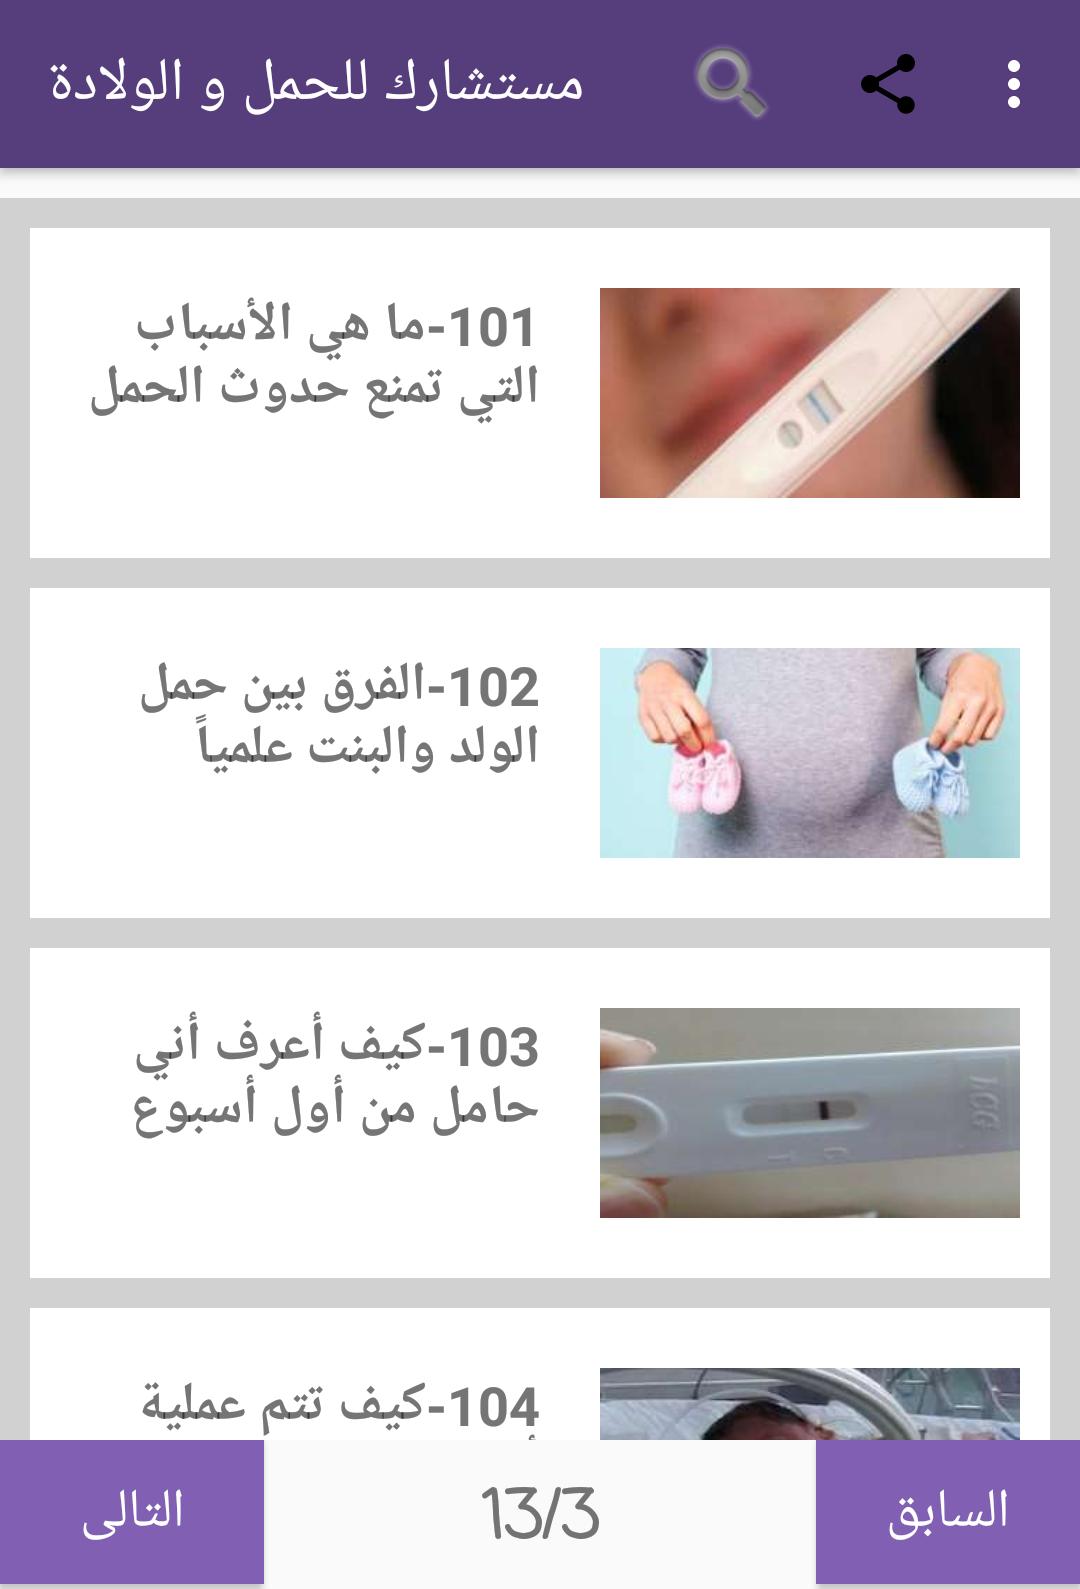 طبيبك الخاص للحمل و الولادة for Android - APK Download